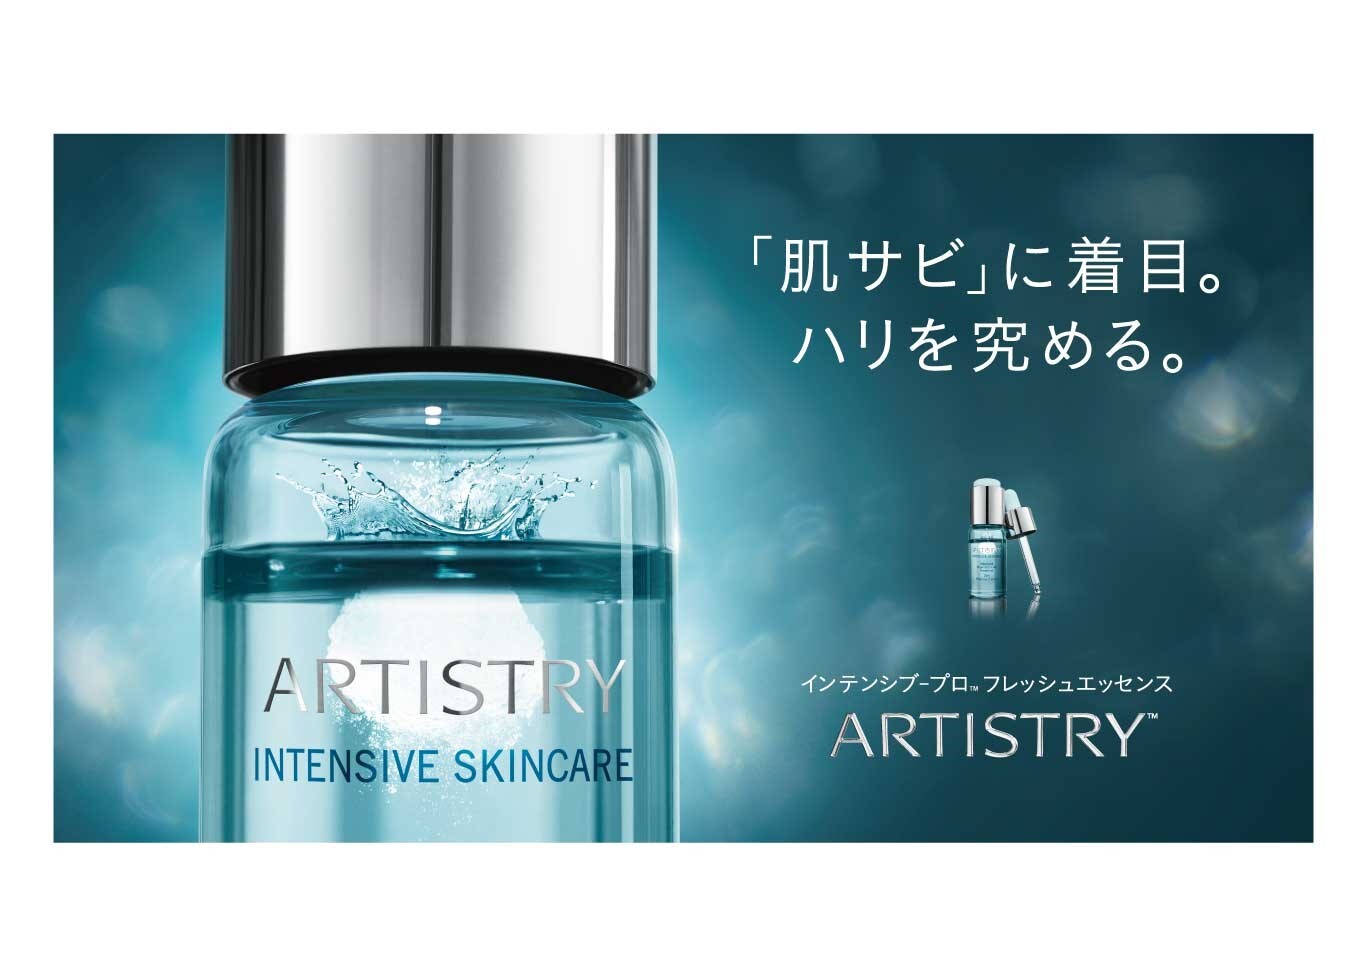 世界中で9秒に1本売れた*1実力派美容液がついに日本上陸。「肌サビ」に